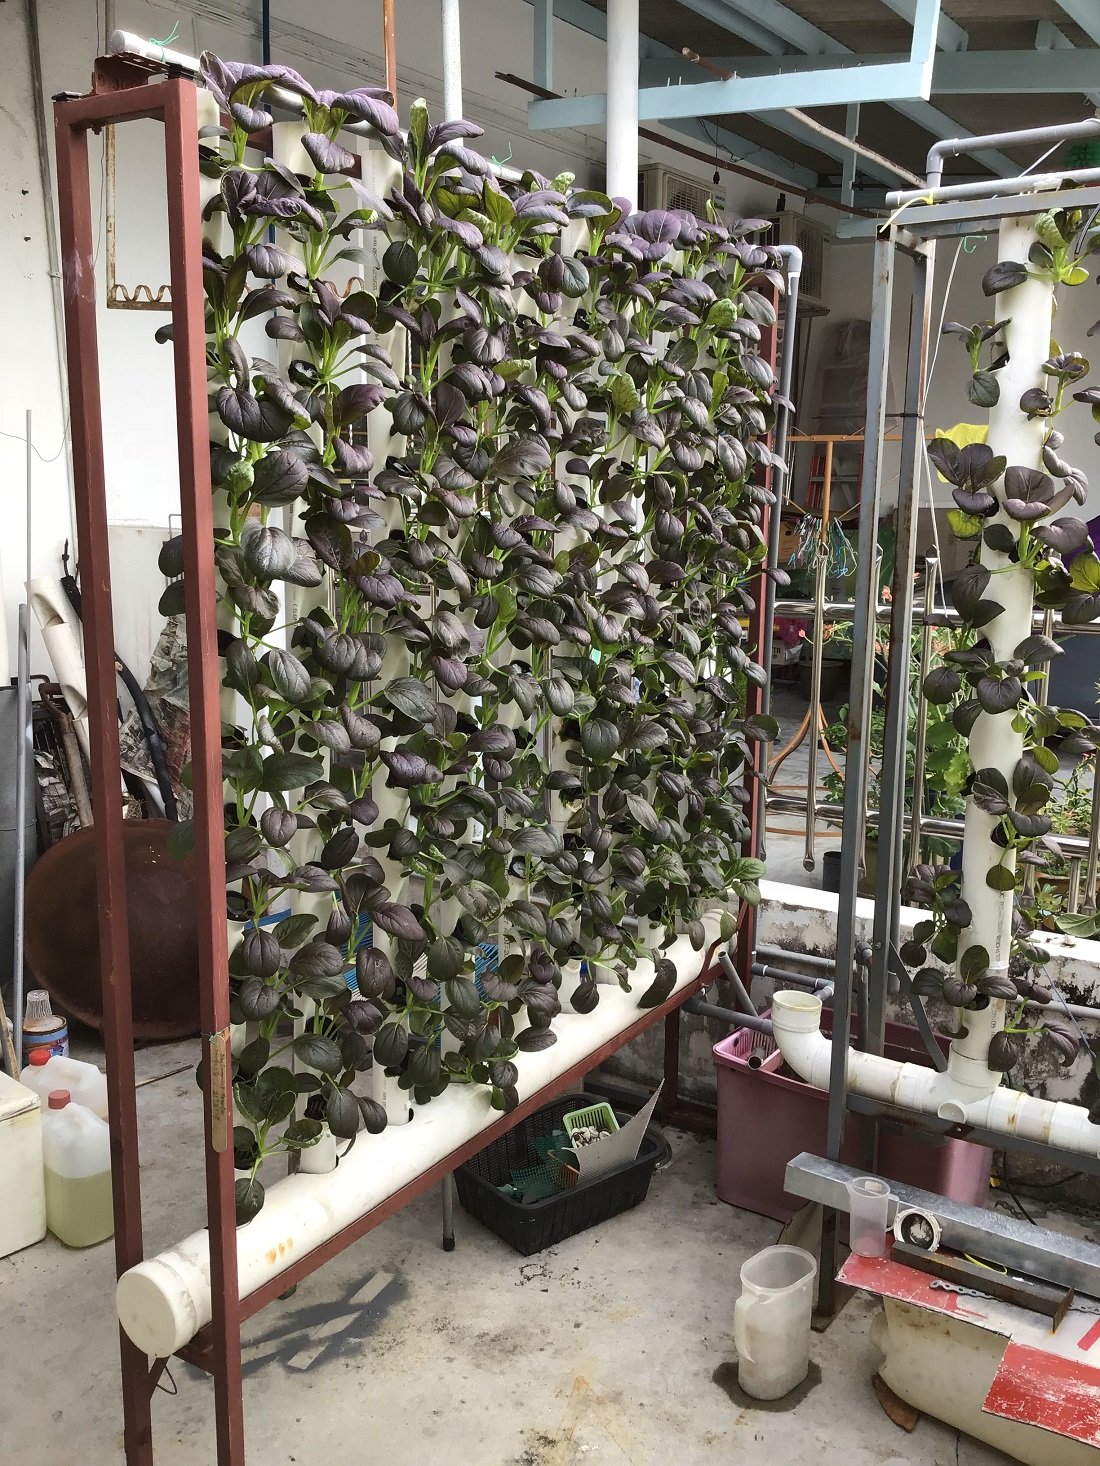 潘耀财自制的垂直式水耕架可种出108株蔬菜。